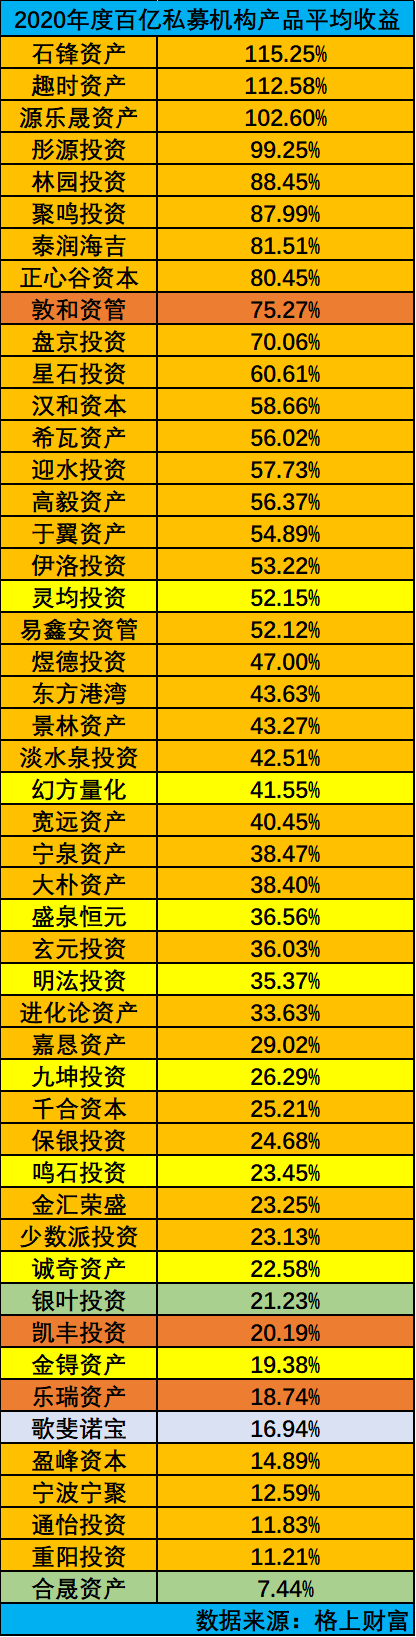 百亿私募2020榜单:王亚伟低于平均线 重阳投资以11.21%几近垫底